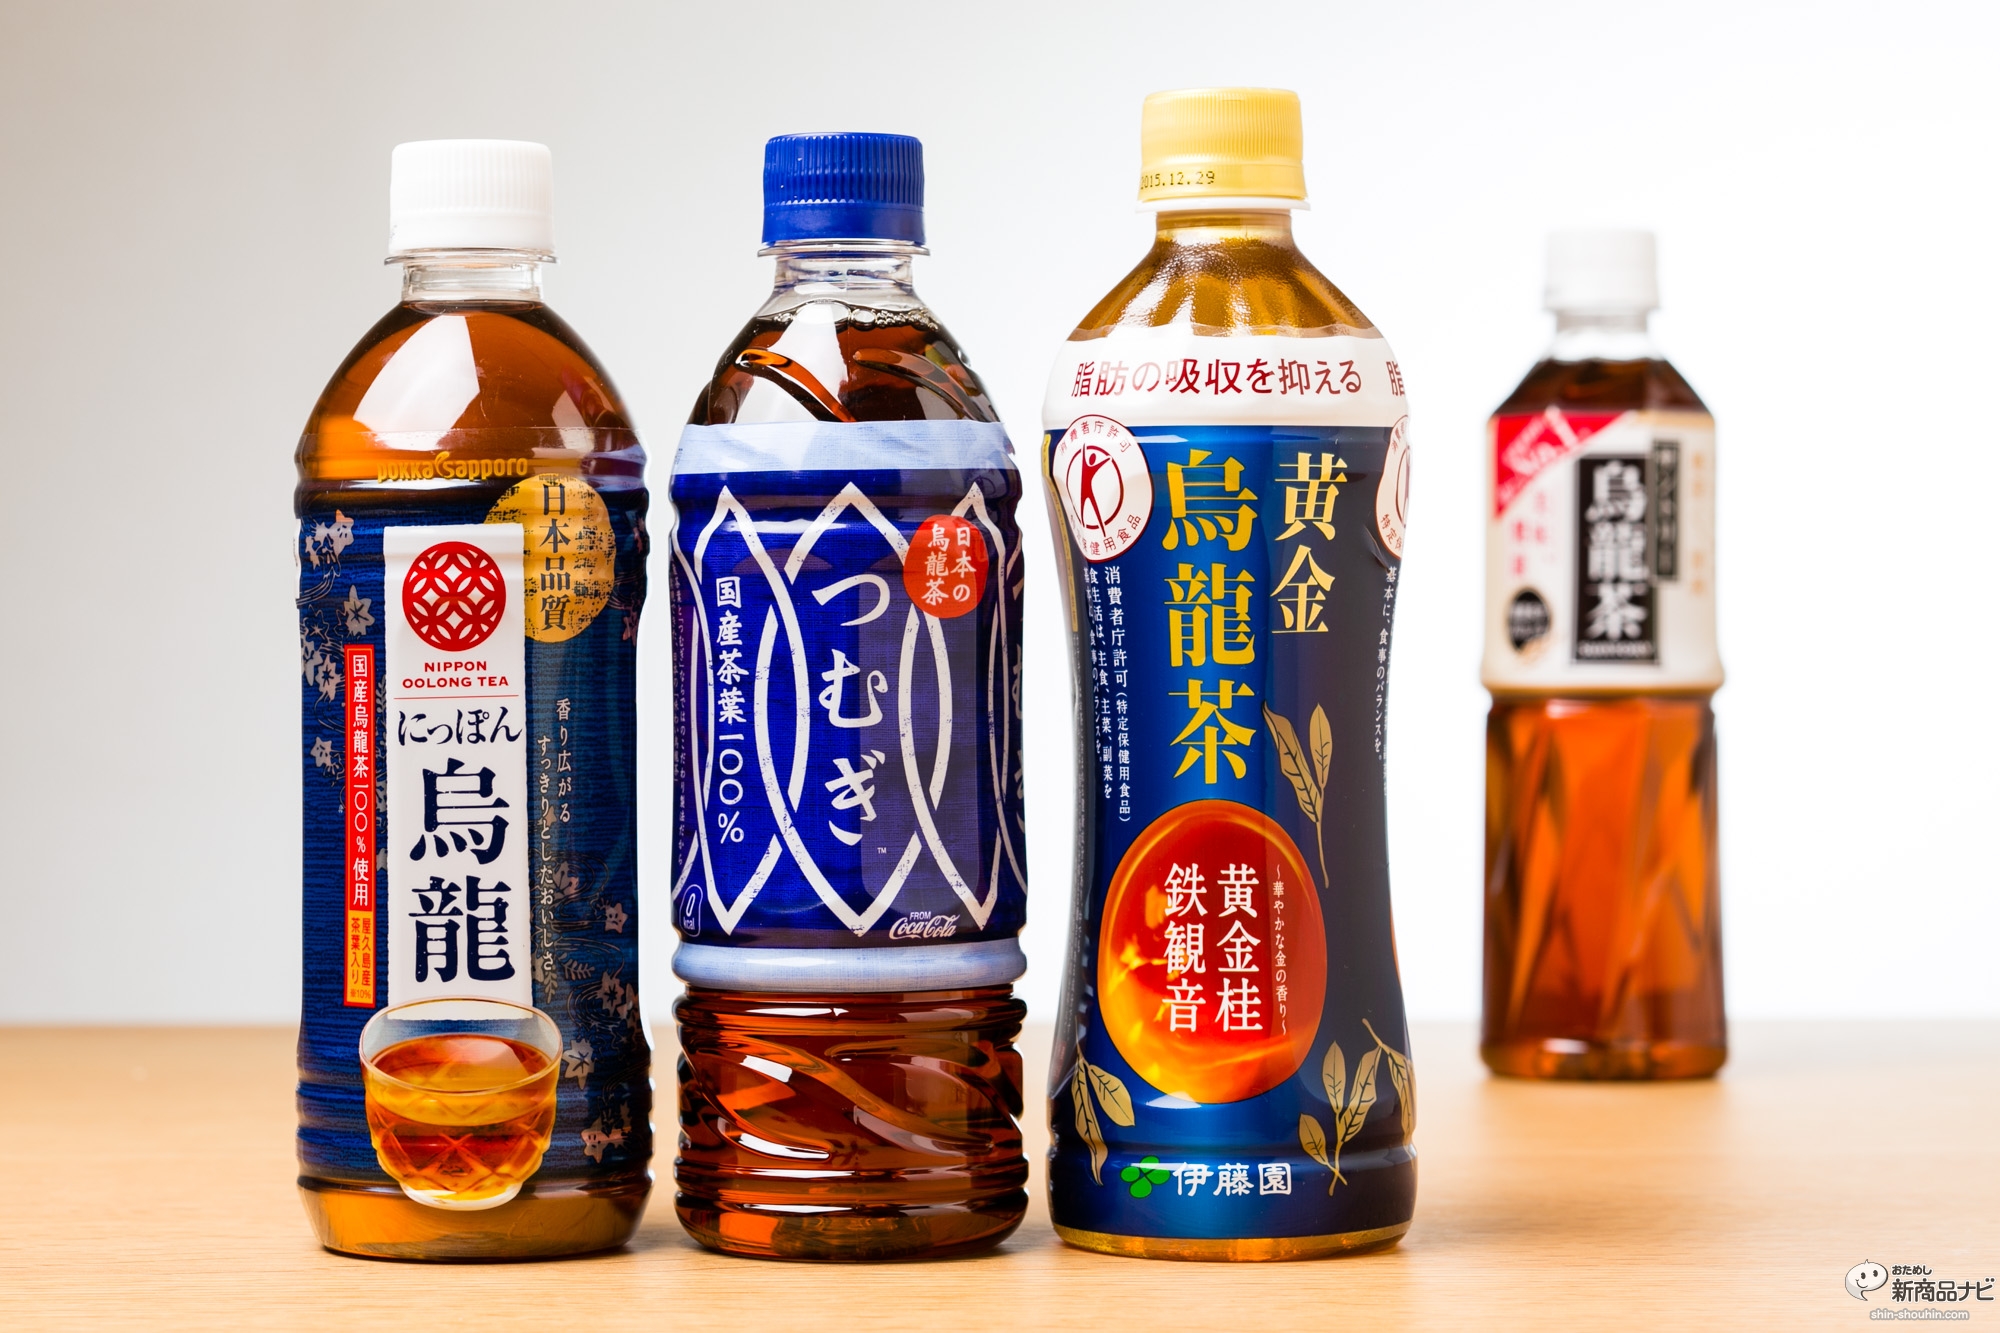 おためし新商品ナビ » Blog Archive » 新世代ウーロン茶を3種比較！『日本の烏龍茶 つむぎ』『にっぽん烏龍』『黄金烏龍茶 』一番美味しいのは!？